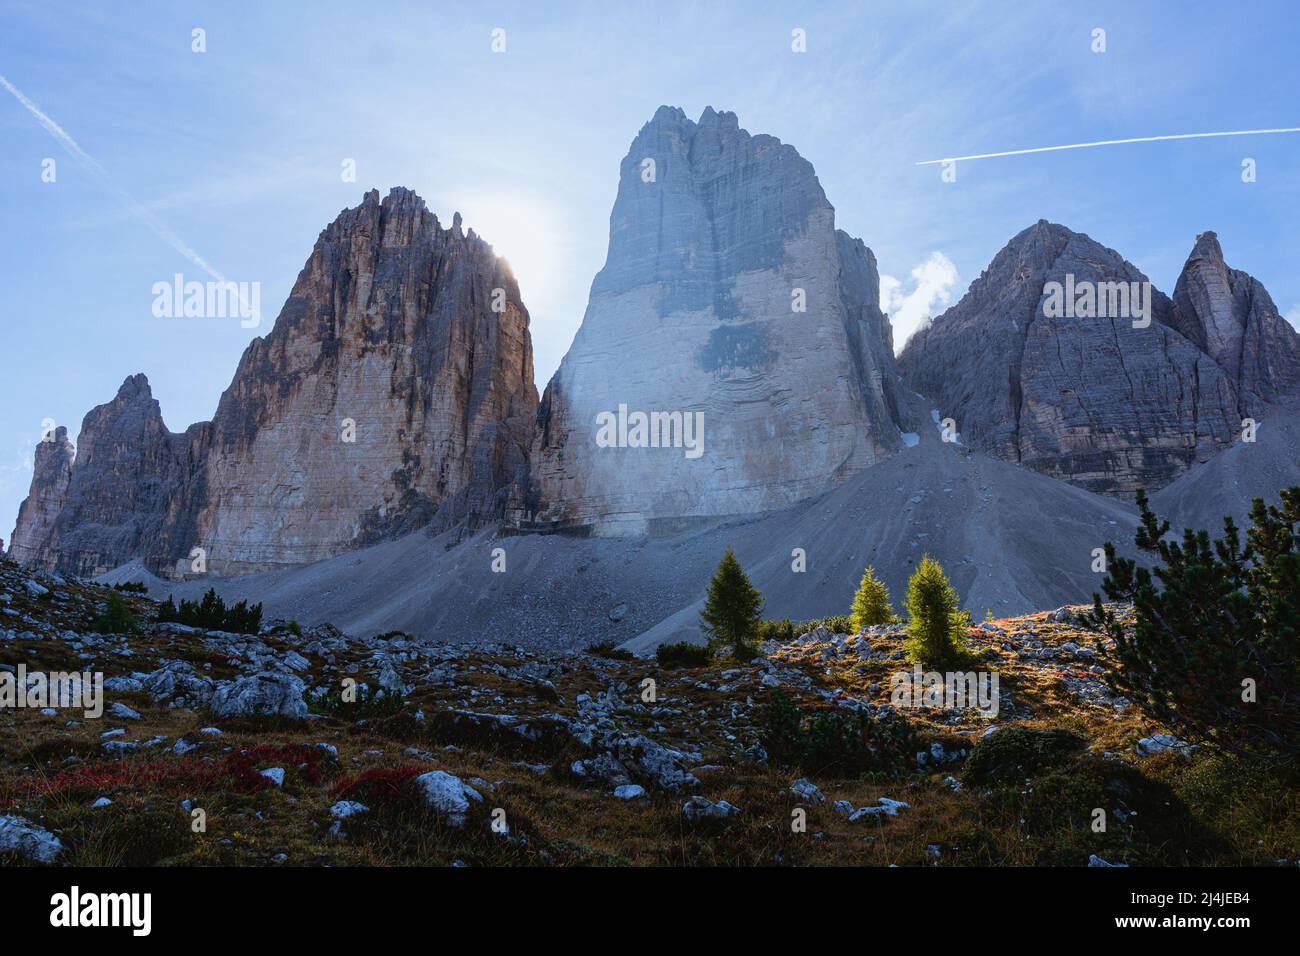 Die drei Gipfel des lavaredo: Einer der schönsten und berühmtesten Berge der Welt, im Naturpark Tre cime-dolomiti di sesto, Venetien - Stockfoto